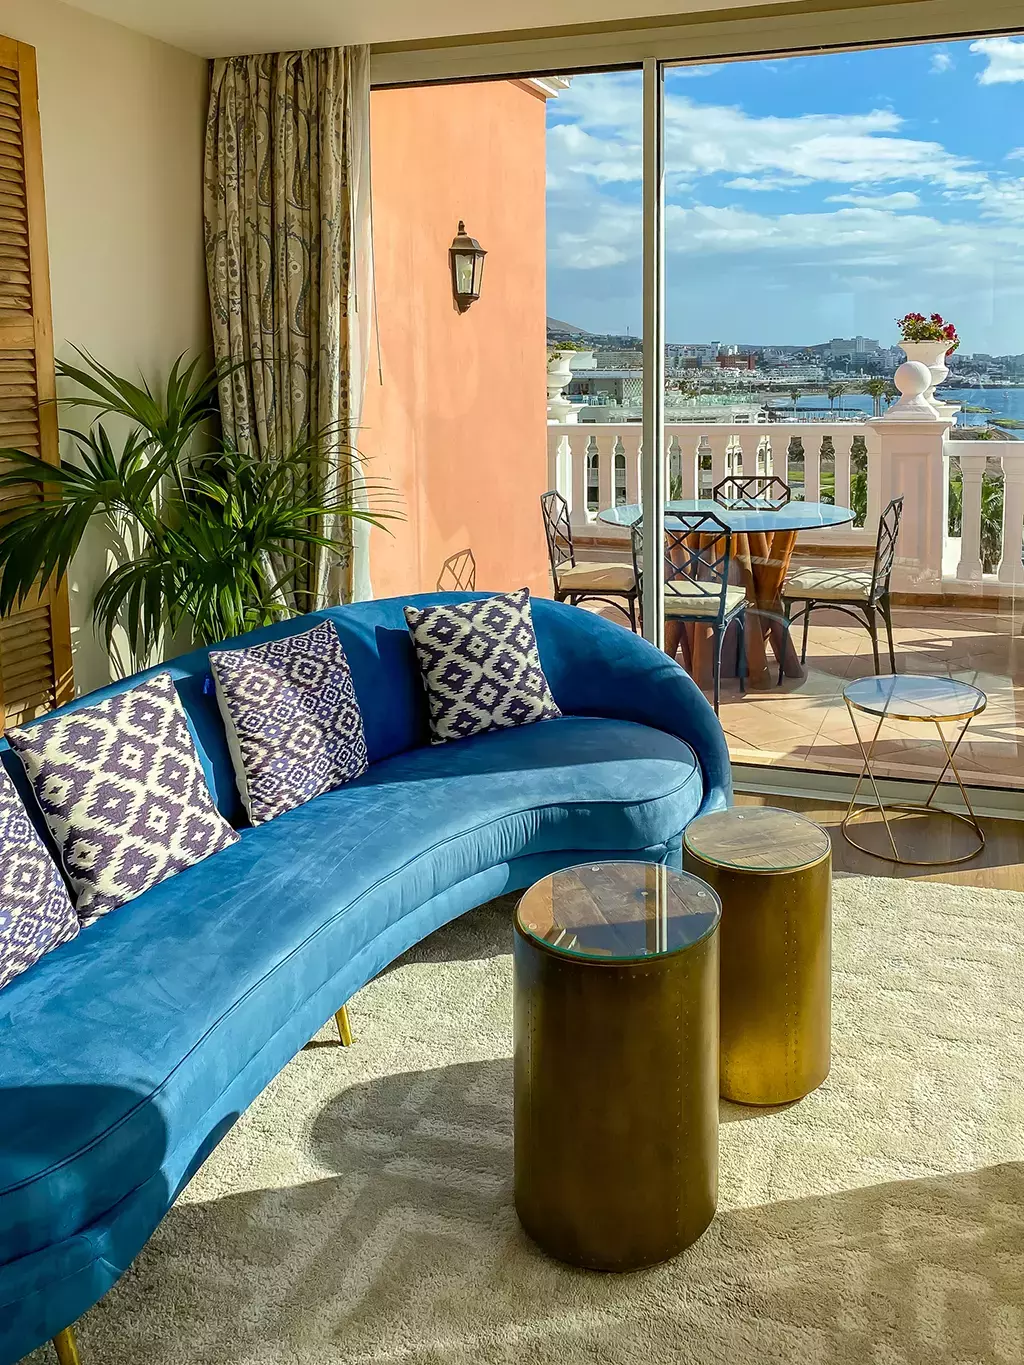 Où dormir à Tenerife ? Notre top 3 des hôtels de luxe à Adeje